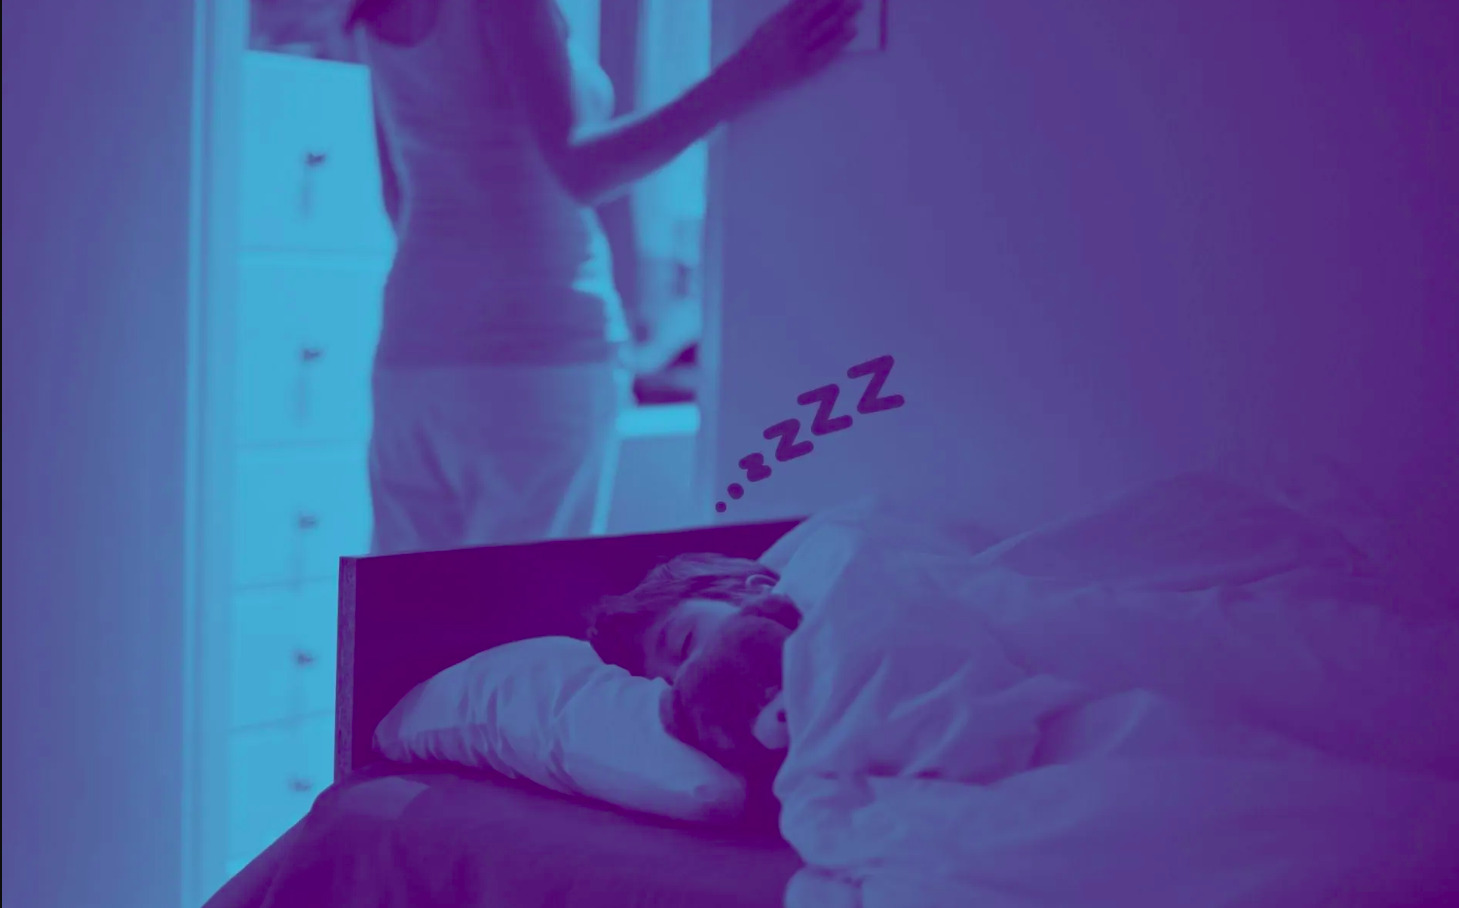 Na foto, criança dormindo na cama, coberta. No plano de fundo, uma mulher está apagando a luz e saindo pela porta. Há um filtro azul sobre a imagem, o que não permite ver as cores. Há uma ilustração de zzzz saindo da cabeça da criança.